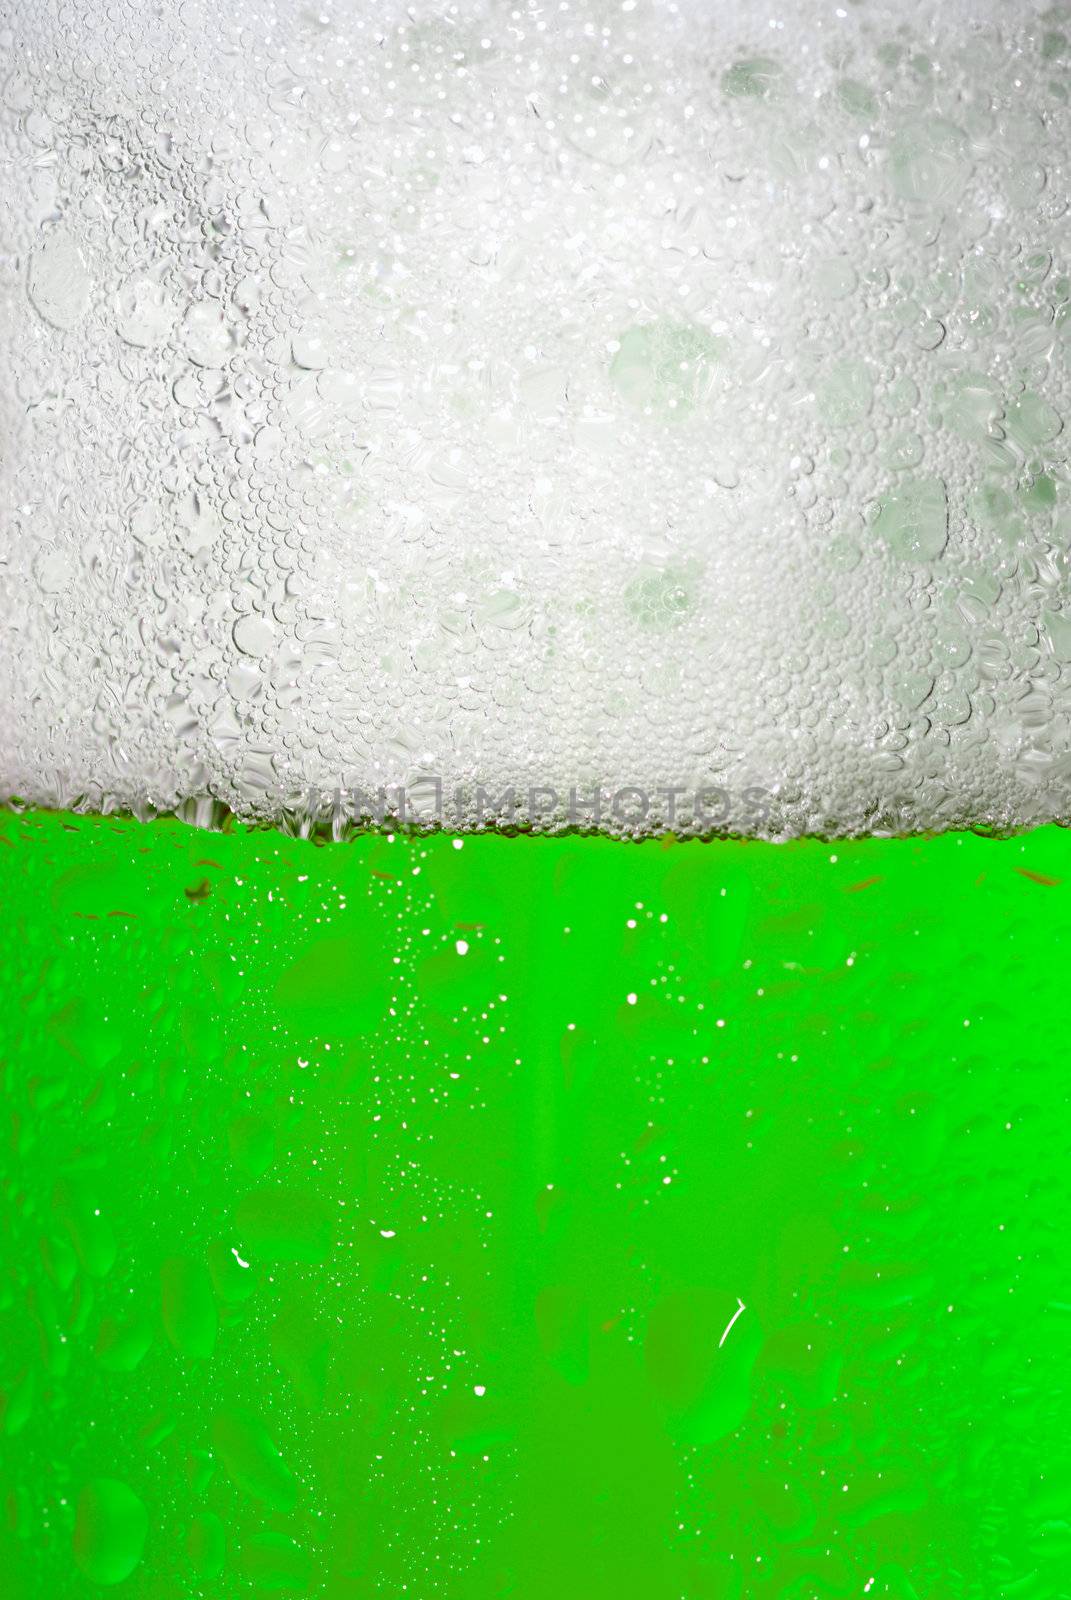 Green Beer mug background